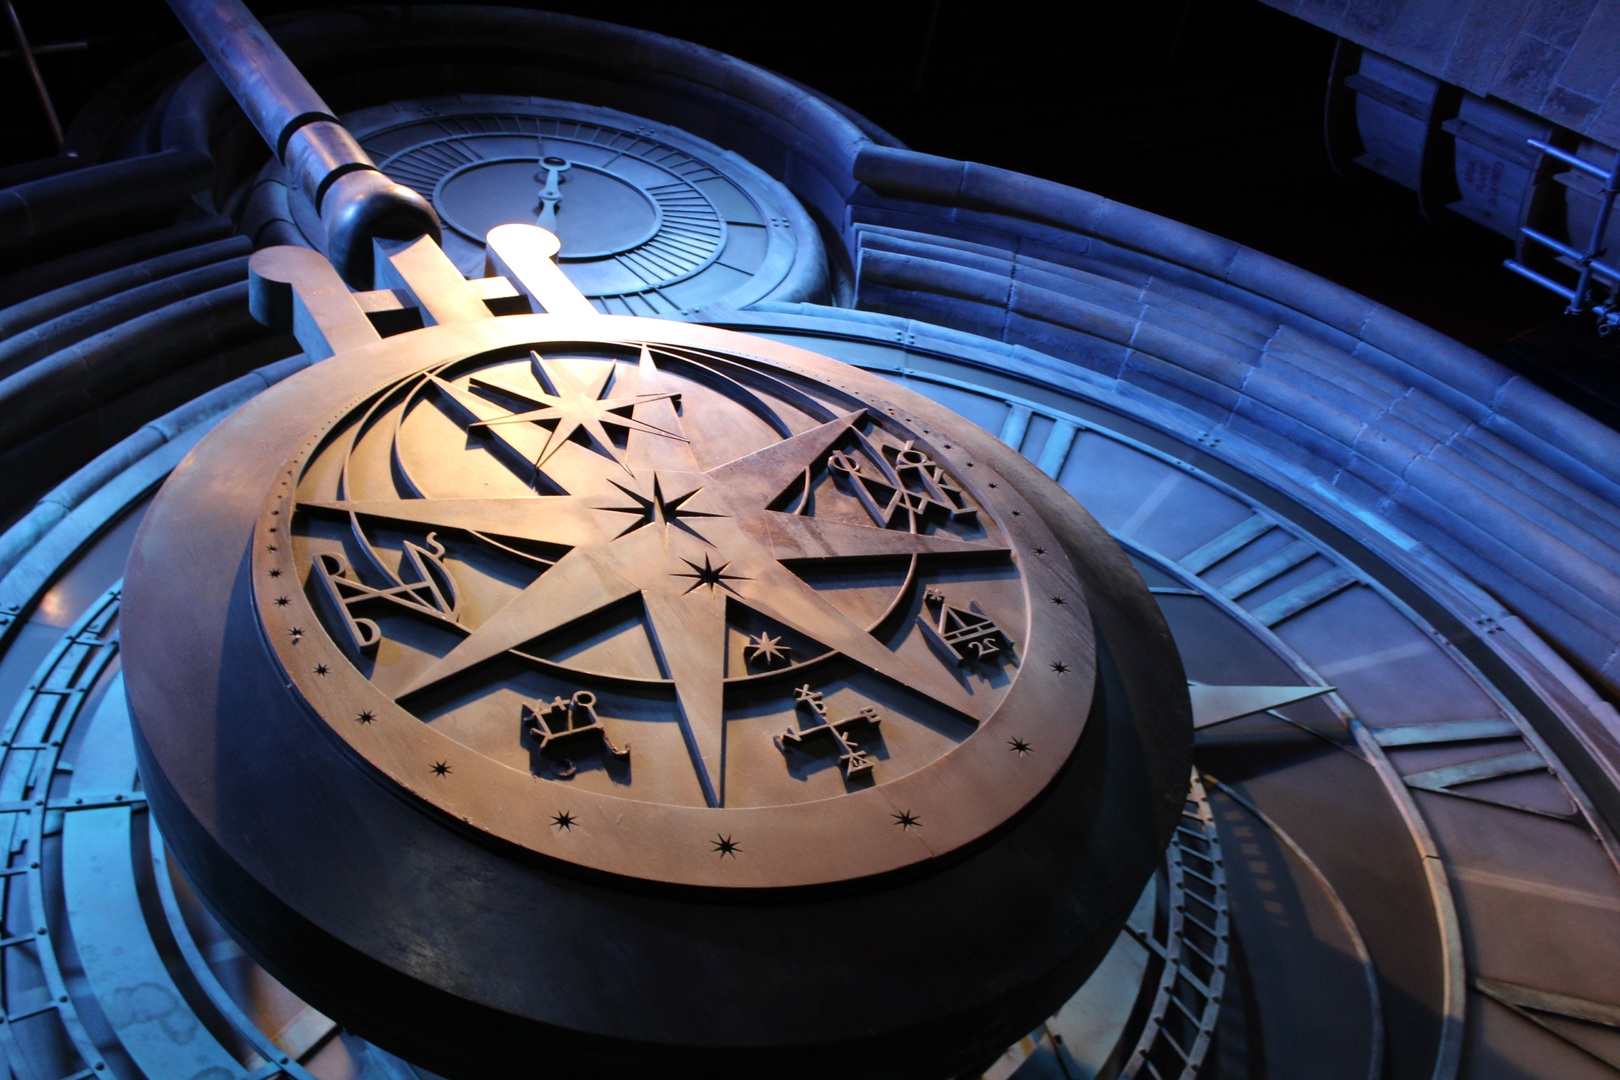 Hogwarts pendulum clock at Warner Bros. Studio